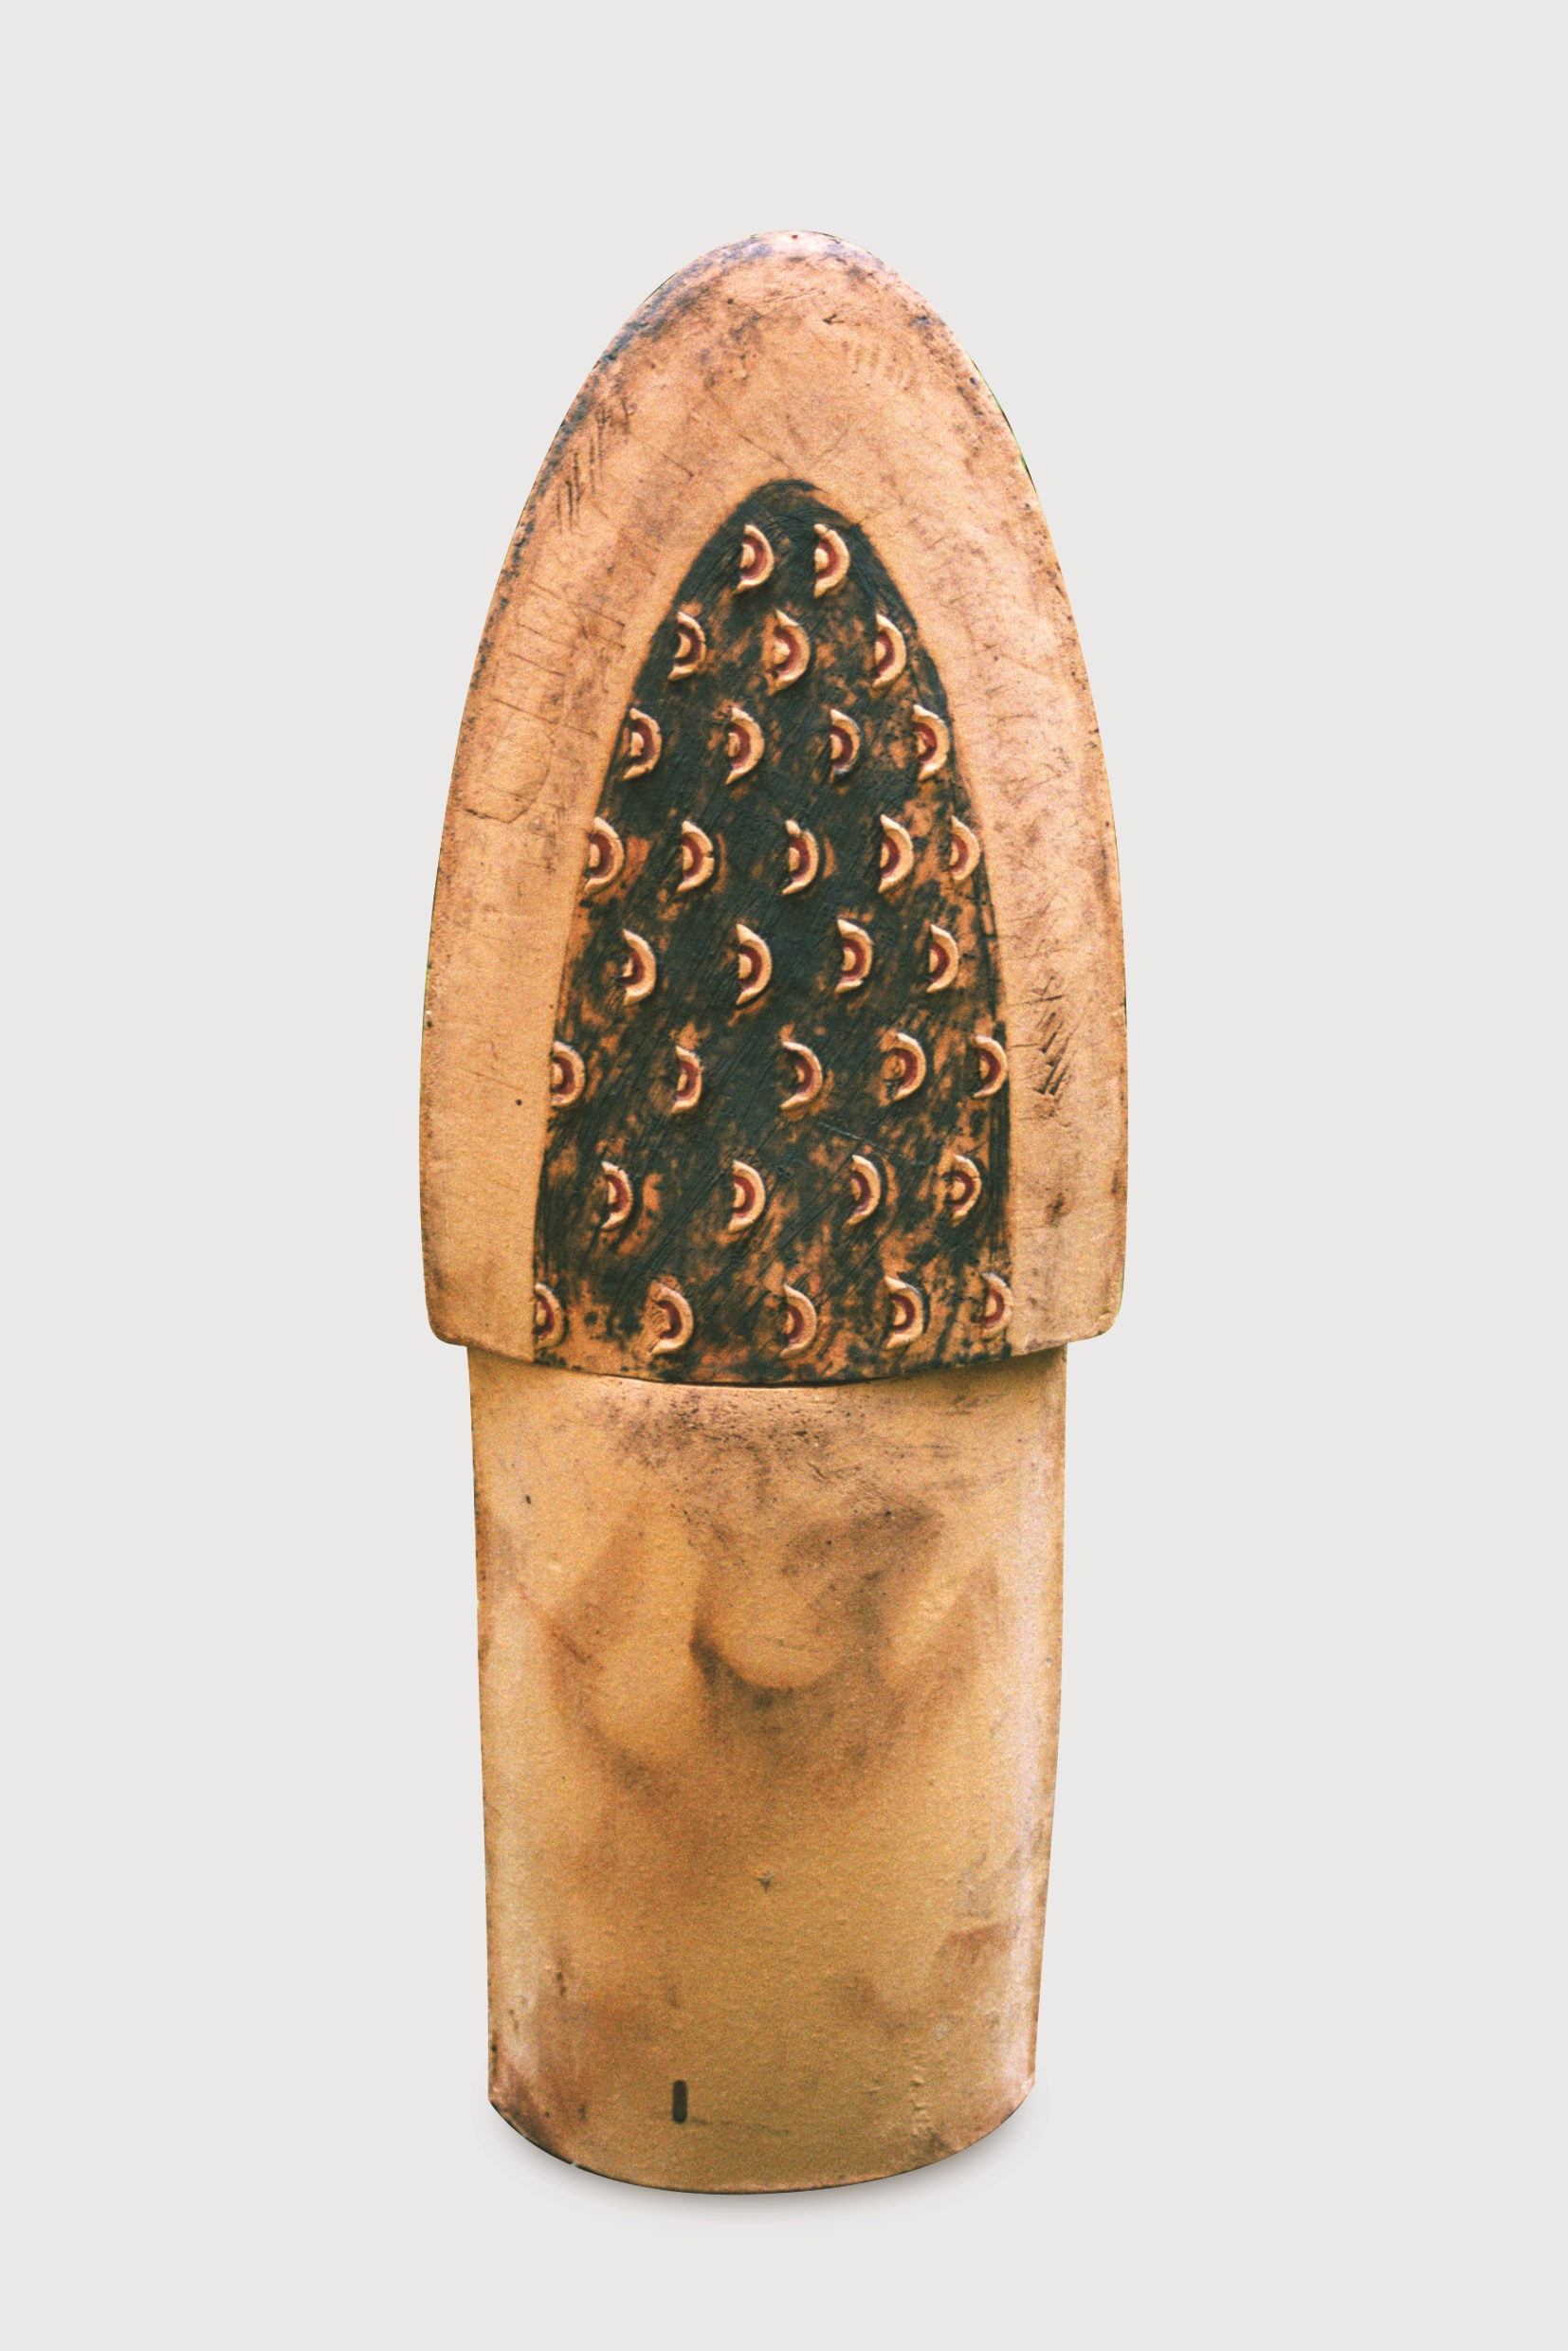 Pomni, 2001, šamot, kysličníky kovů